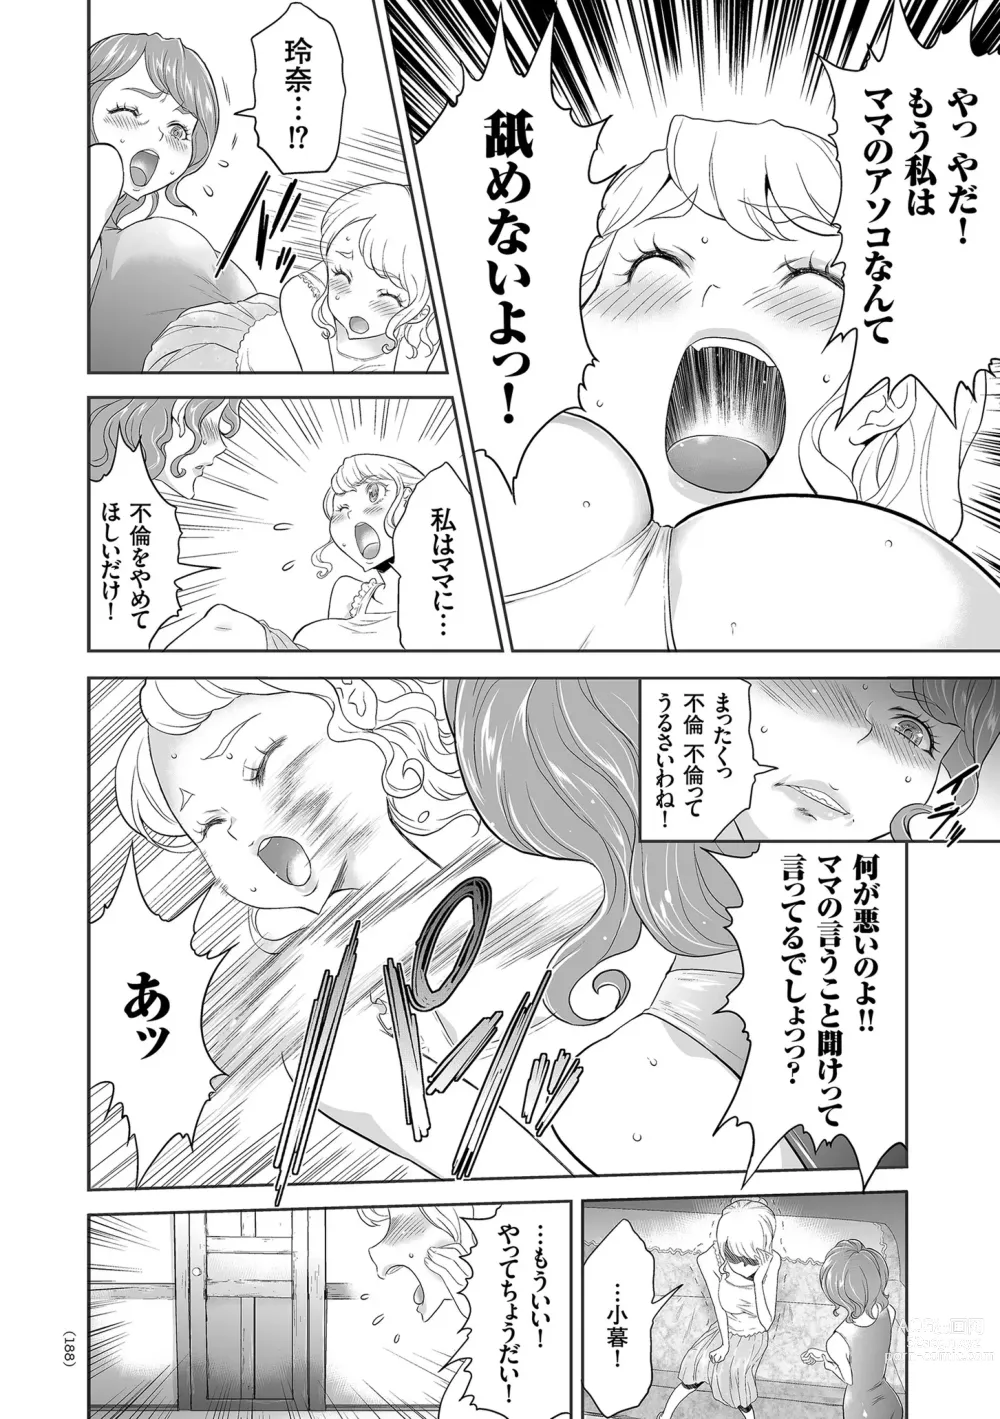 Page 188 of manga Idol Kankin Live!